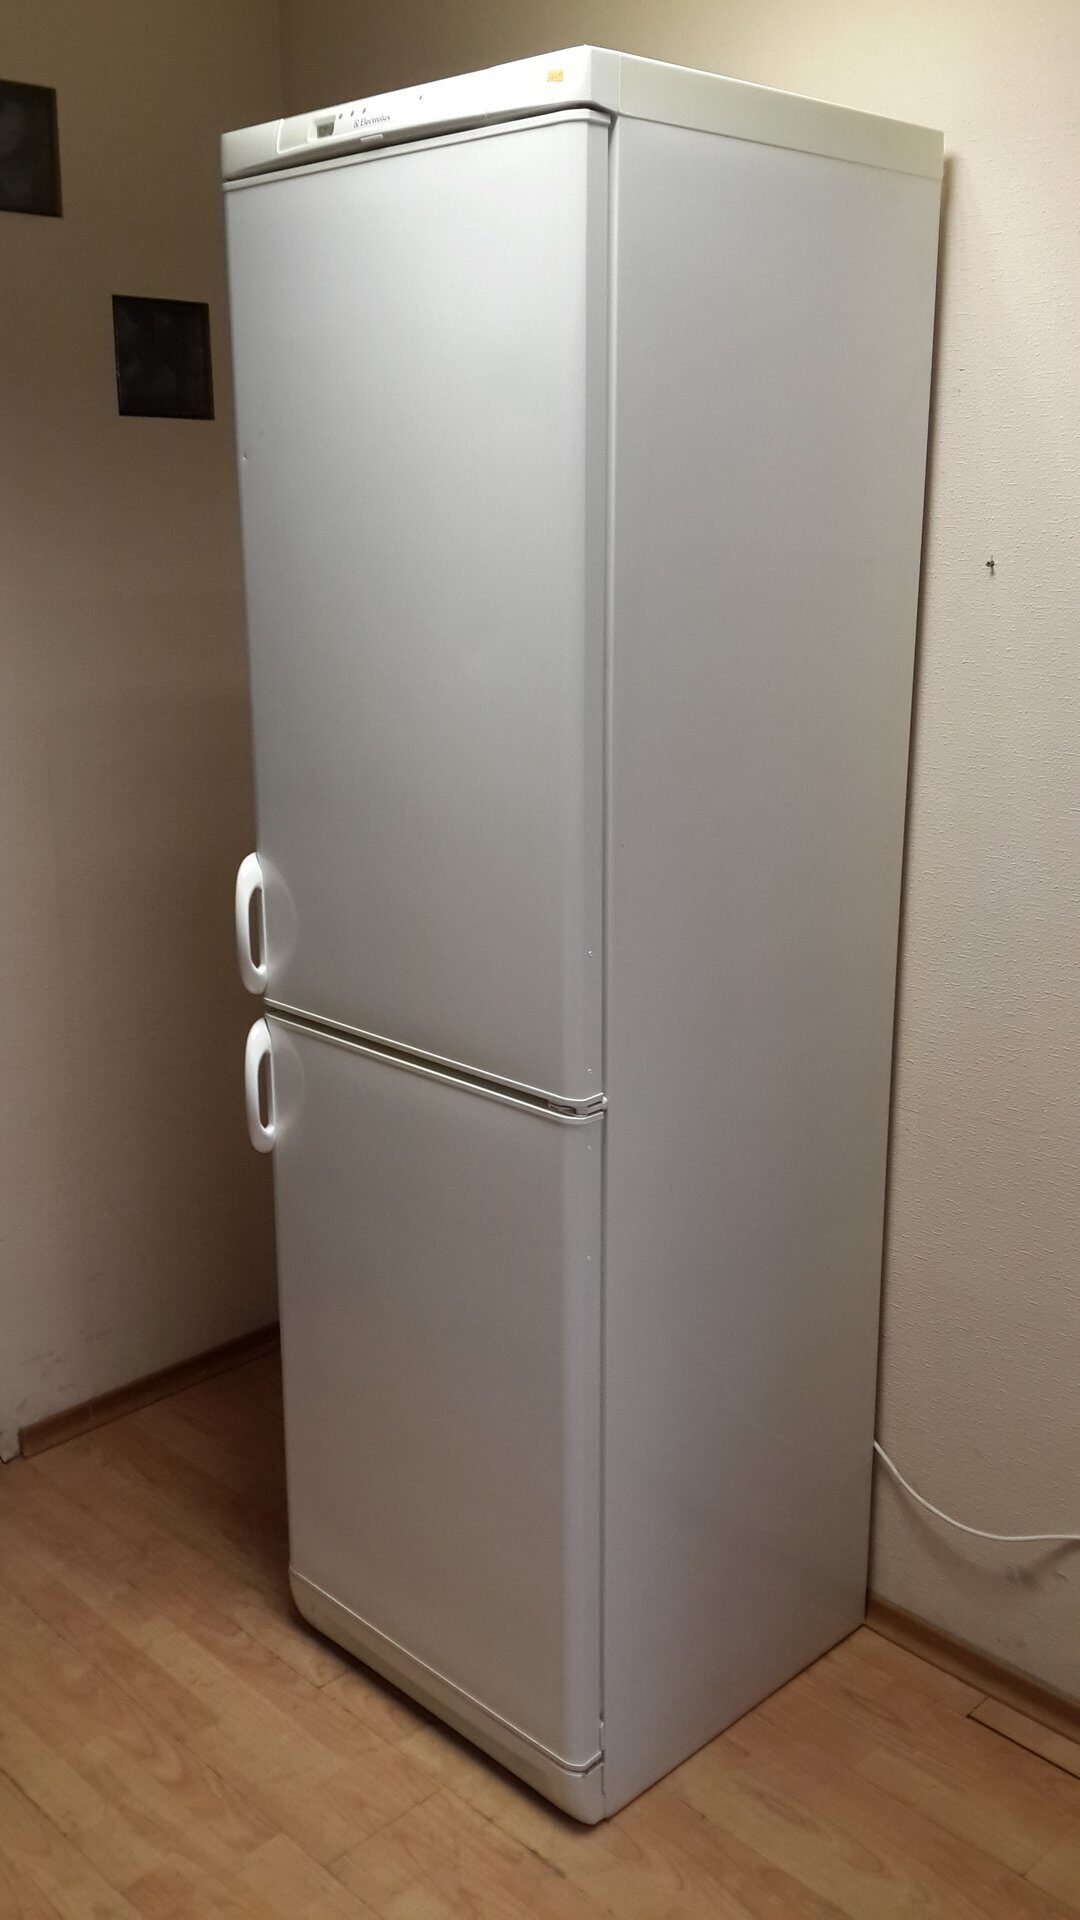 Б у холодильники в красноярске. Холодильник Electrolux er4004b. Холодильник Электролюкс er8992b. Холодильник Electrolux er3217. Холодильник Electrolux er 8916.